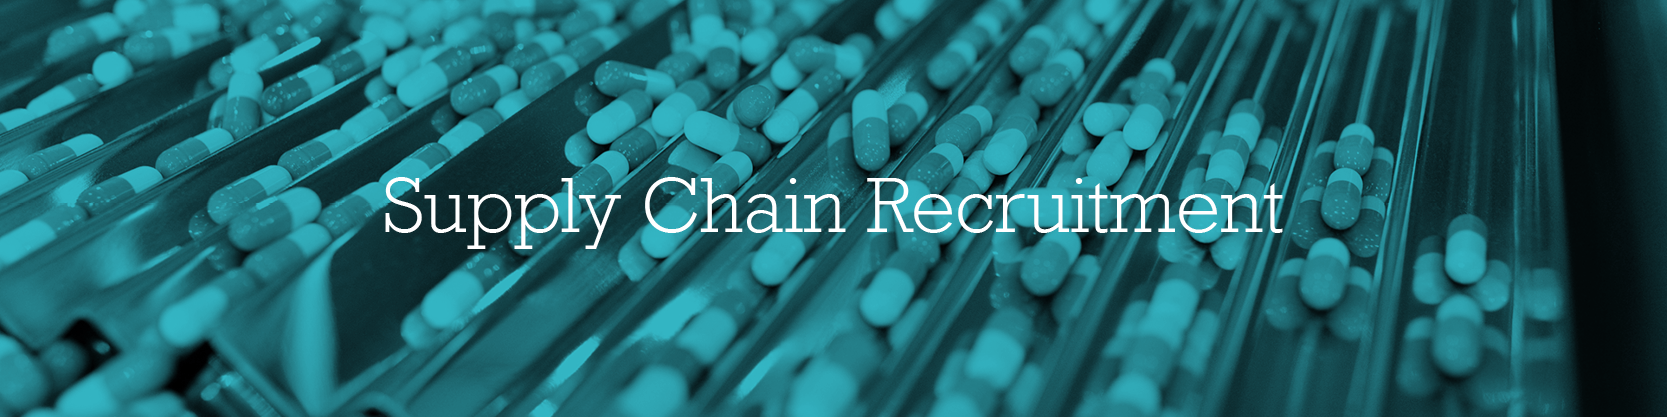 Supply Chain Recruitment